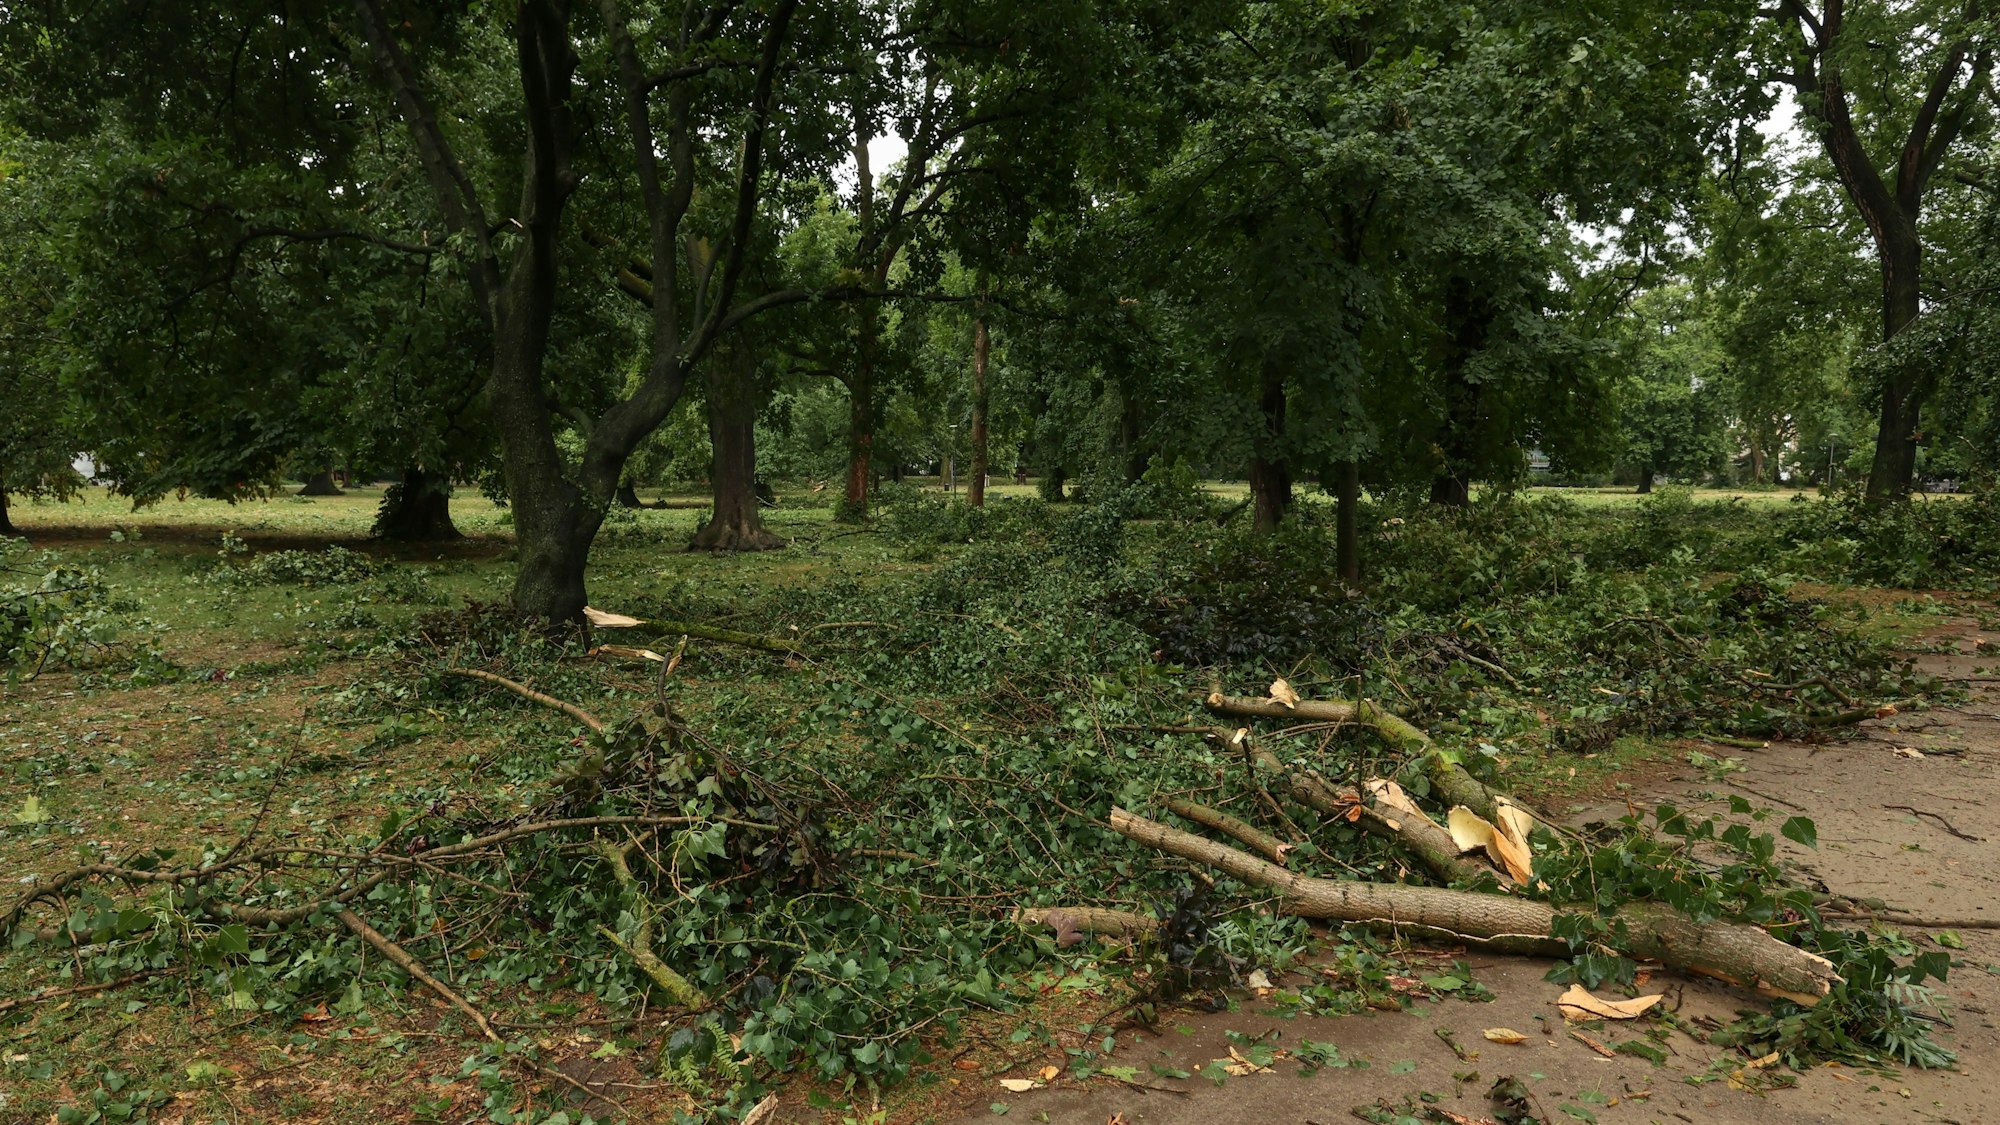 Unwetter in Köln am 24. Juli: Im Stadtgarten sind zahlreiche Bäume beschädigt worden.

